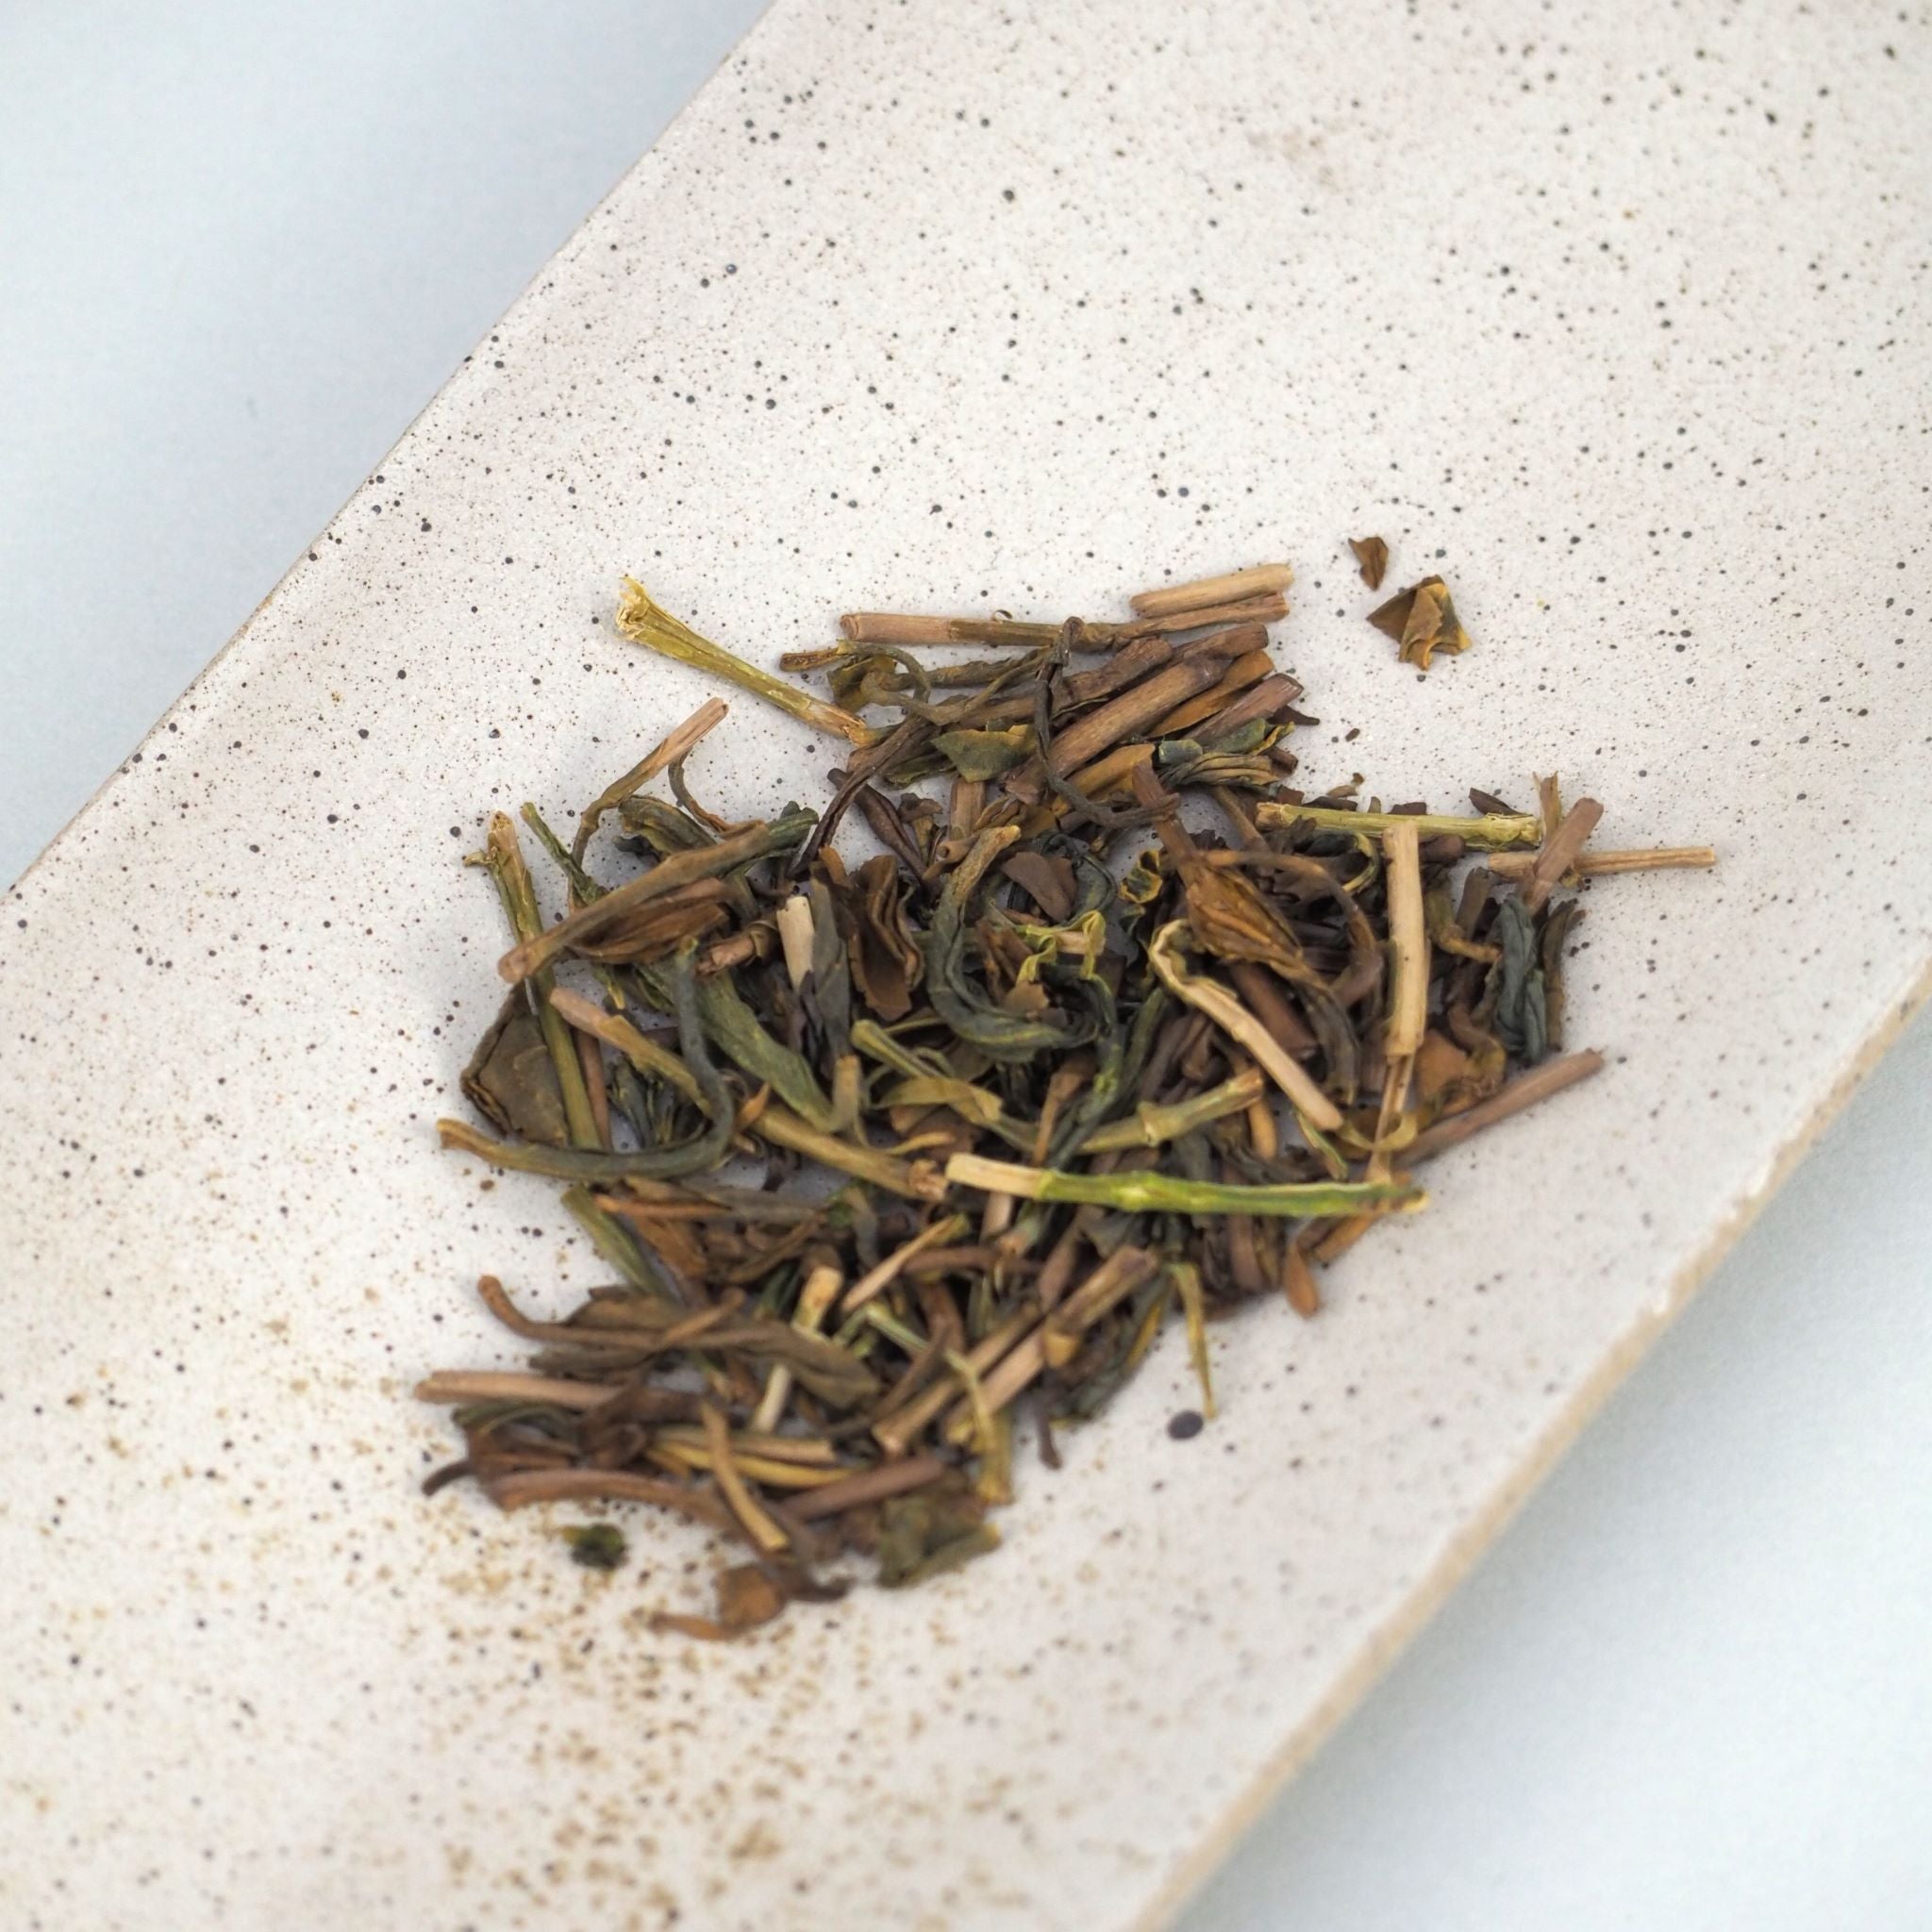 高千穂ほうじ茶の茶葉画像です。茶葉は少し捩れていて、少し濃い緑色や薄茶色です。